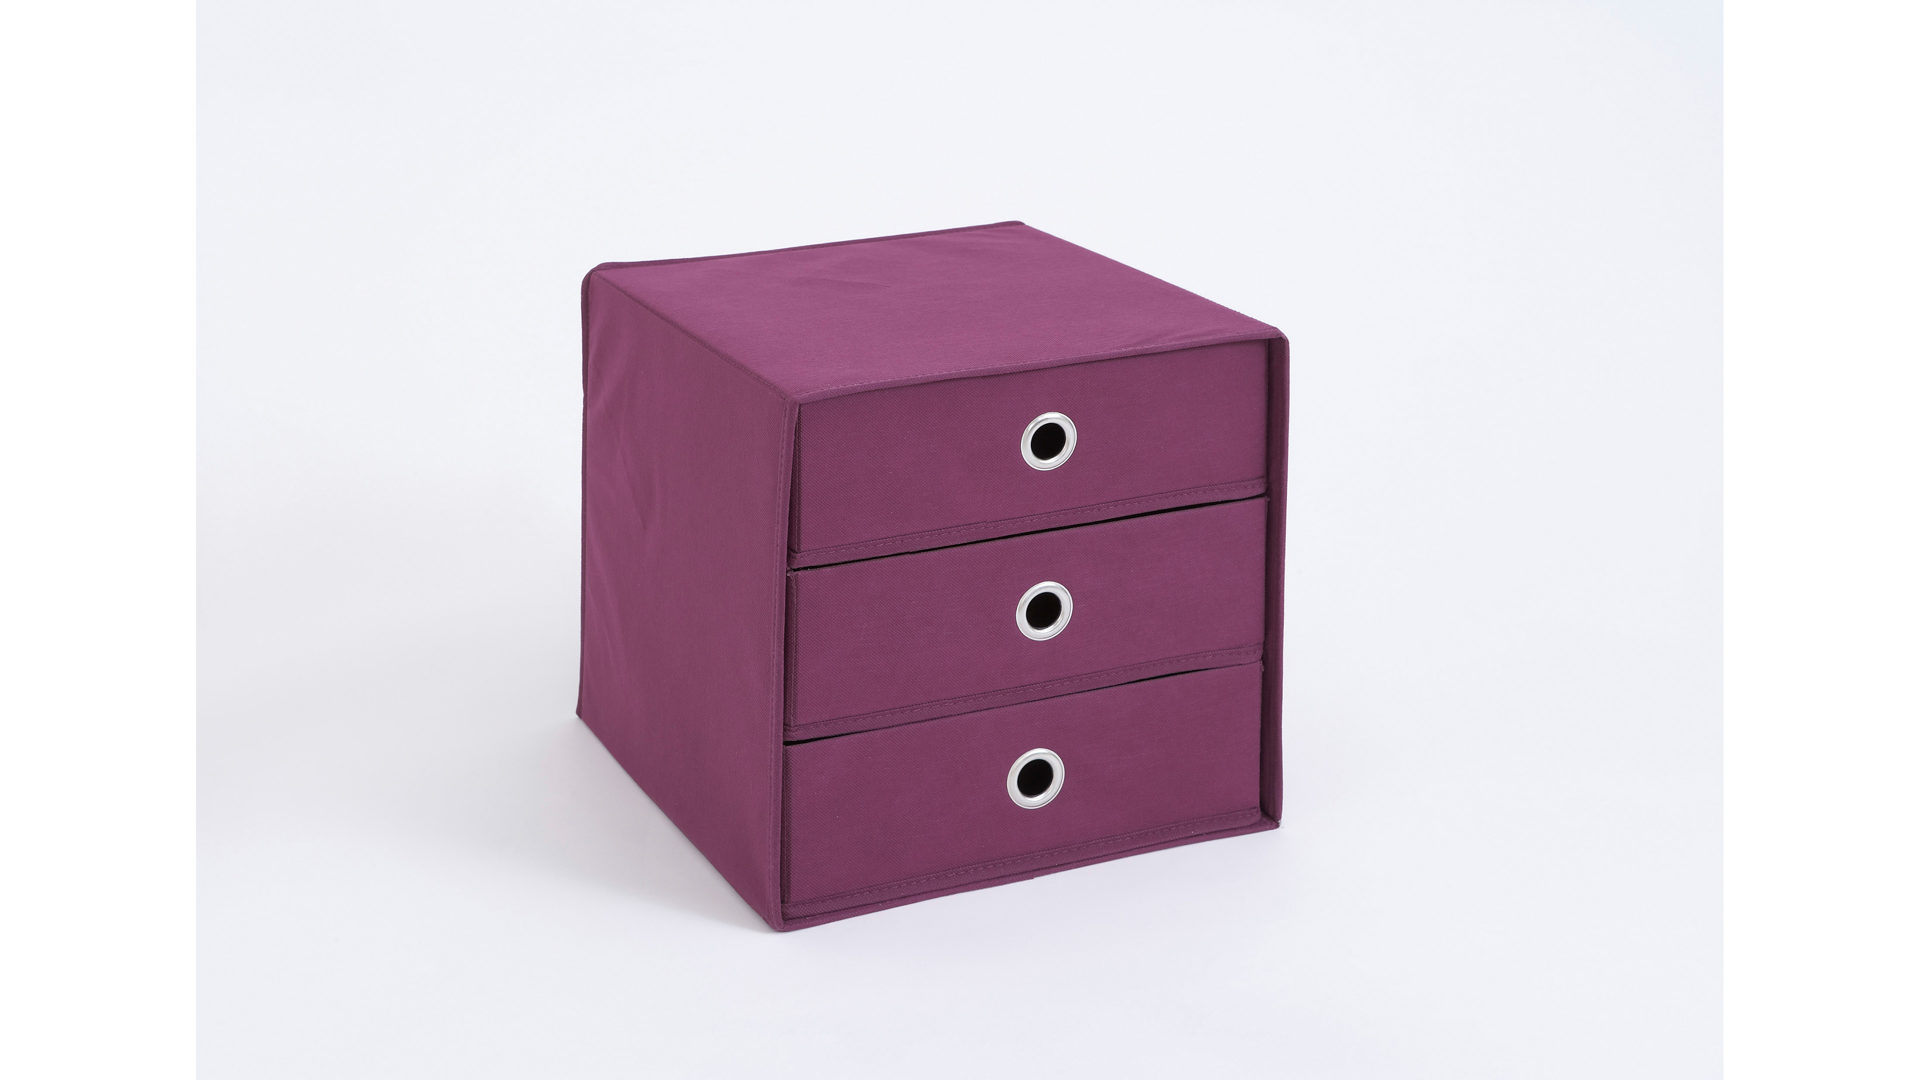 Faltbox Fmd furniture aus Stoff in Lila Faltbox mit drei Schubladen lilafarbenes, verstärktes Vlies - drei Schubladen, ca. 32 x 32 cm